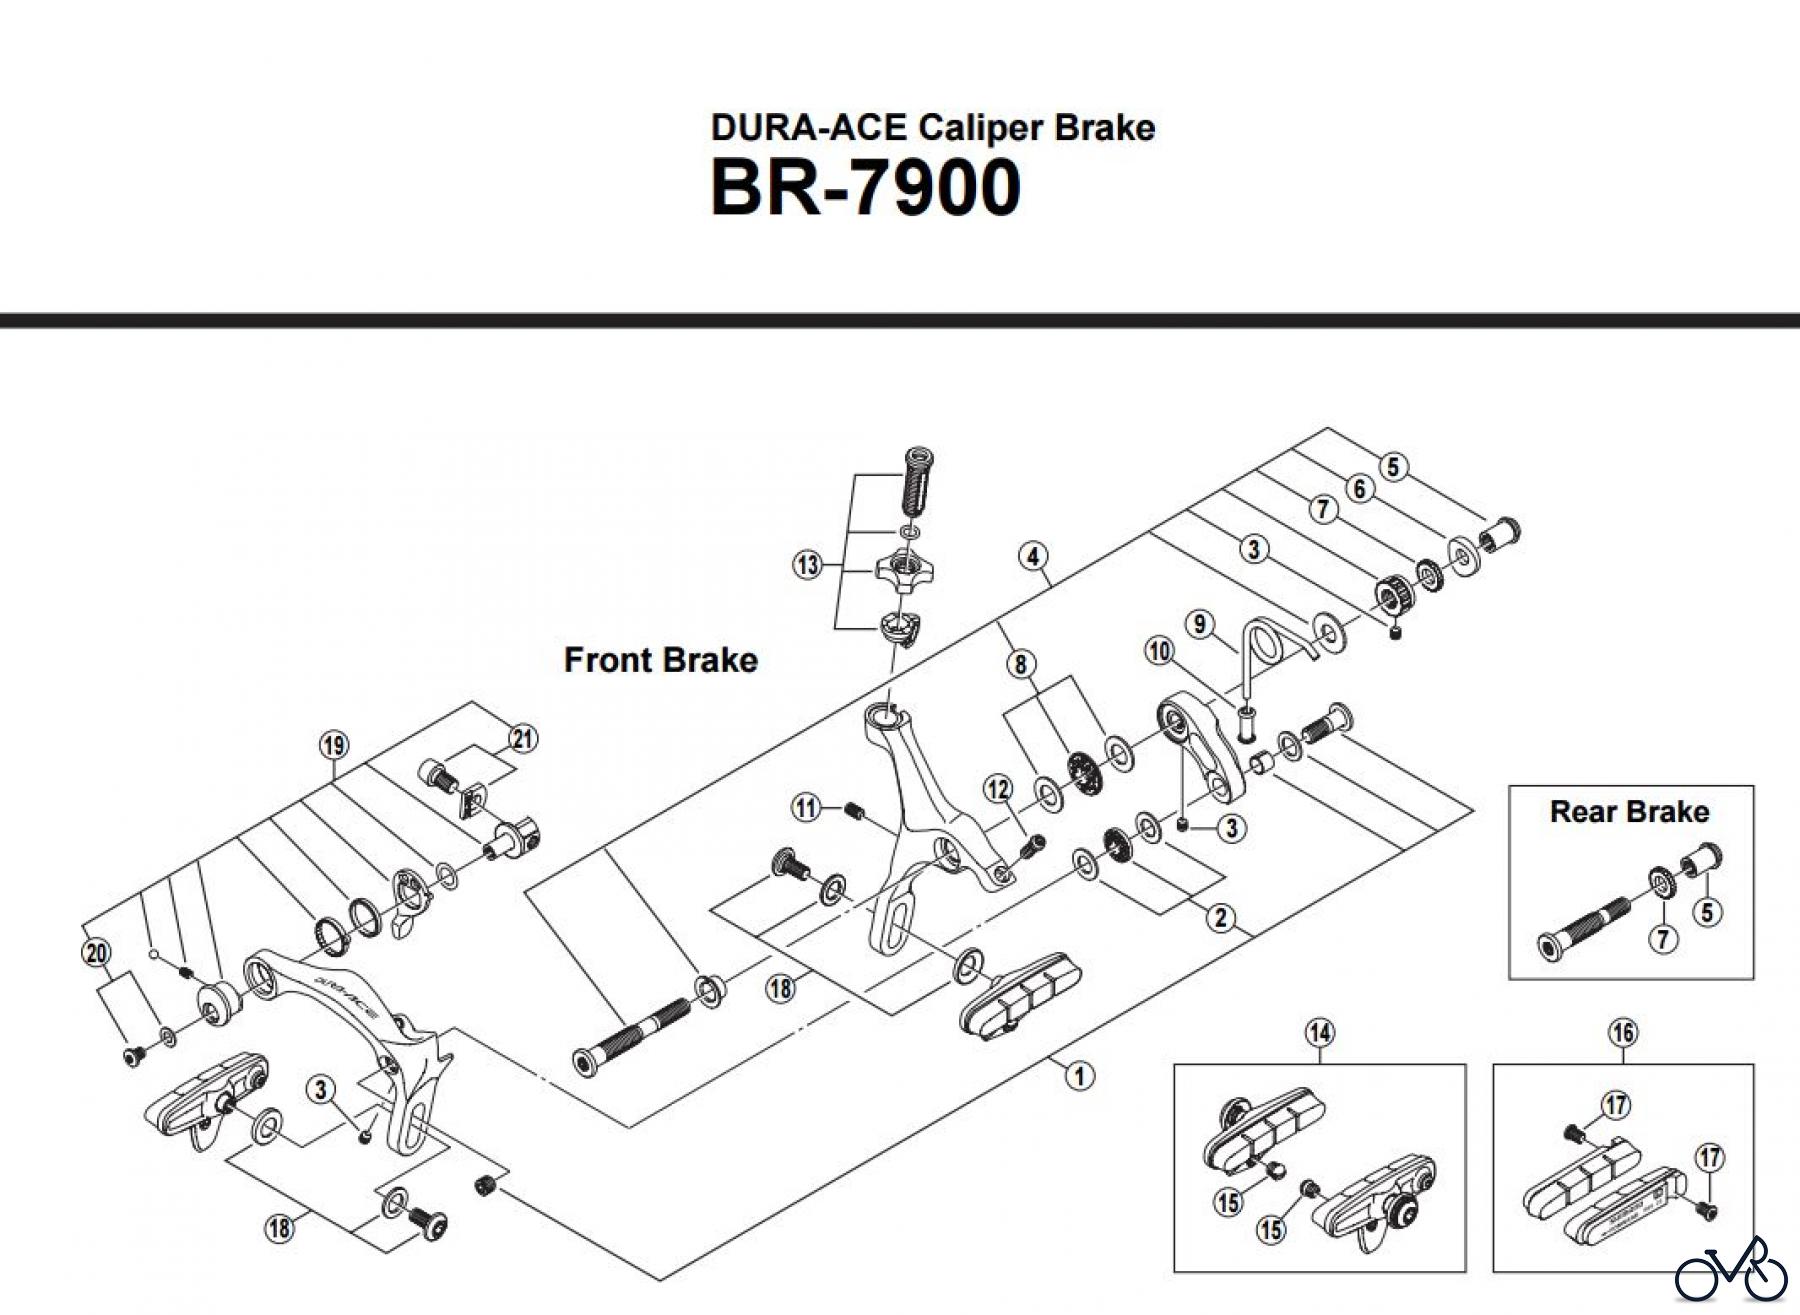  Shimano BR Brake - Bremse BR-7900 -2868 DURA-ACE Caliper Brake